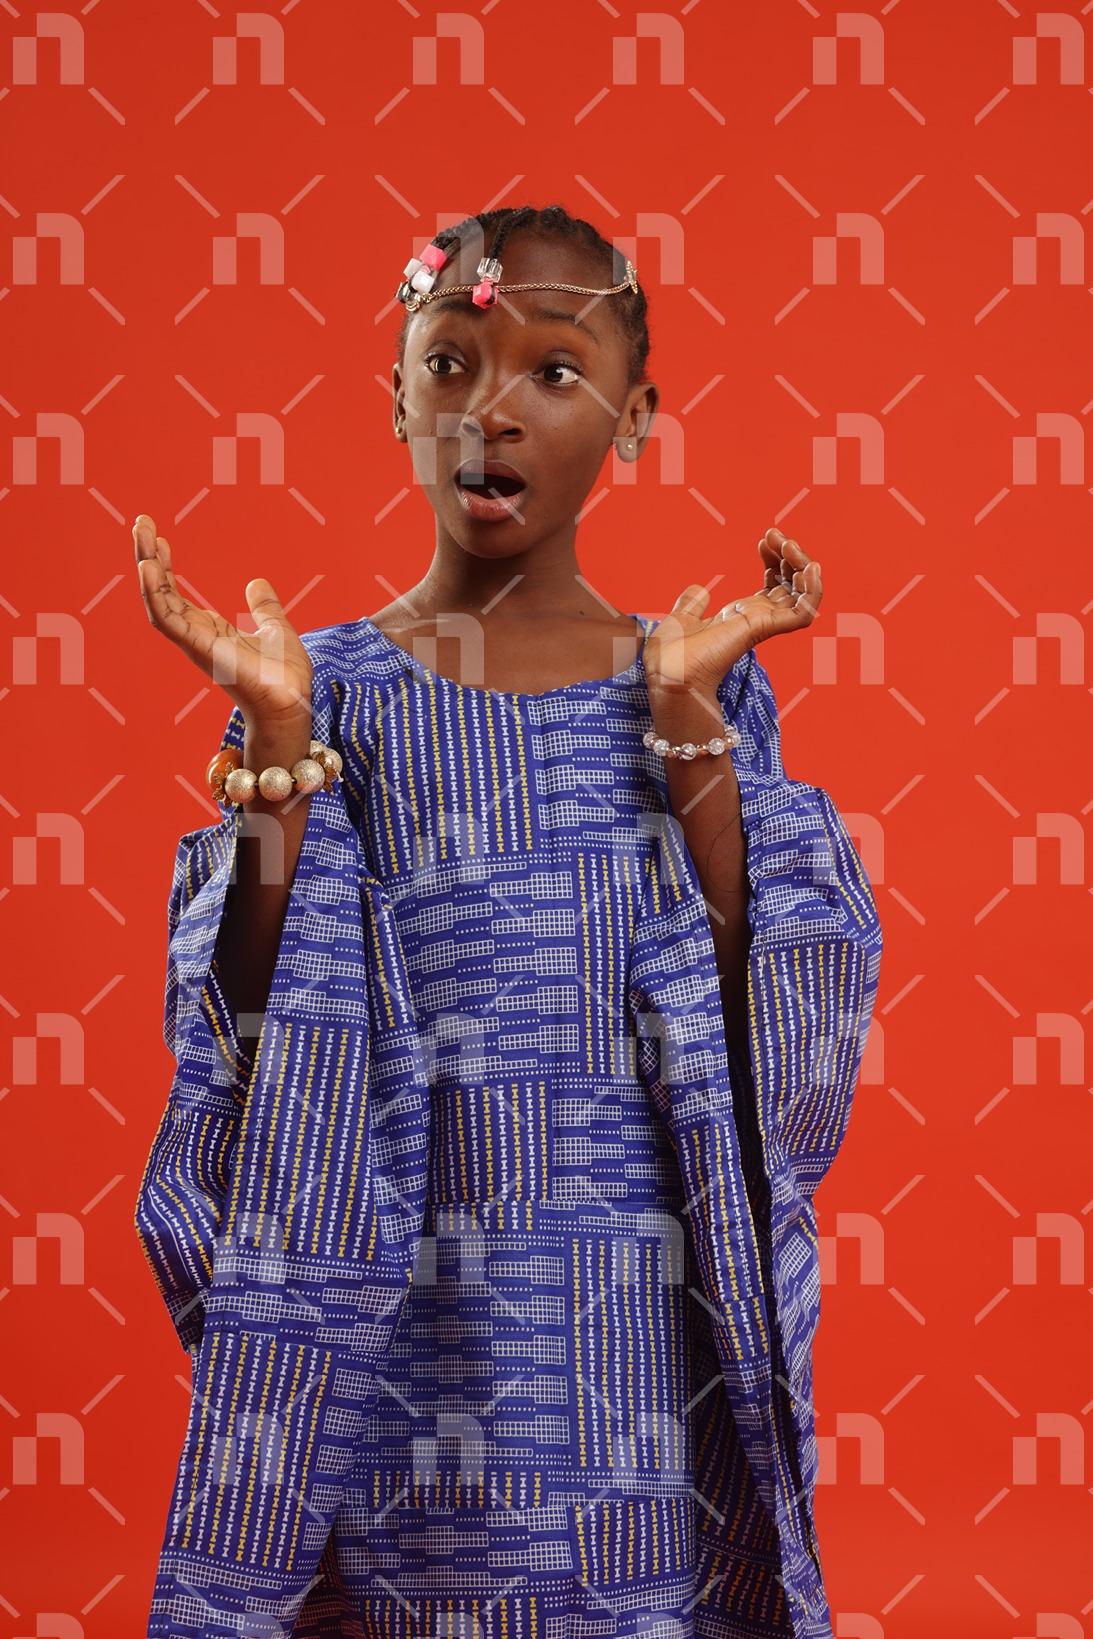 fillette-africaine-moderne-vetue-dune-robe-de-couleur-bleu-executant-un-geste-dinnocence-avec-les-yeux-fixes-sur-la-droite-et-une-bouche-ouverte-pour-une-photo-studio